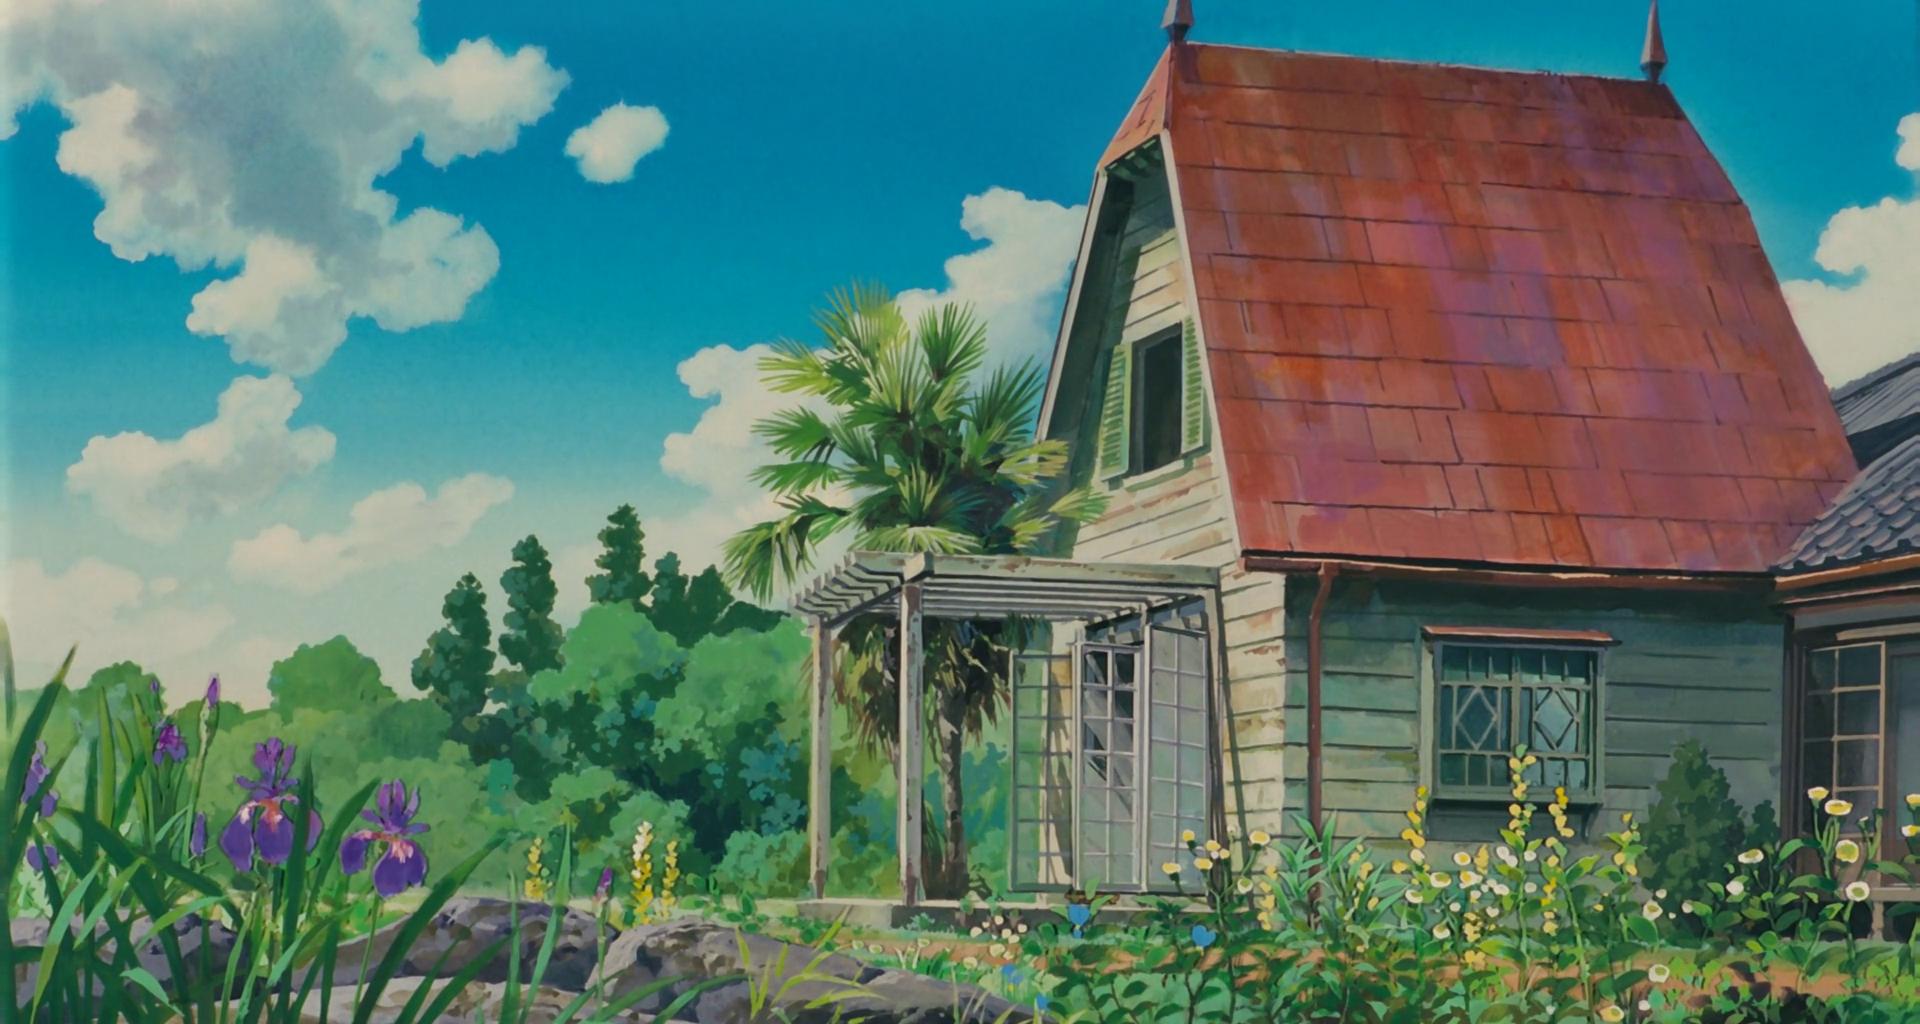 Watch a free, four-part Hayao Miyazaki documentary | Dazed